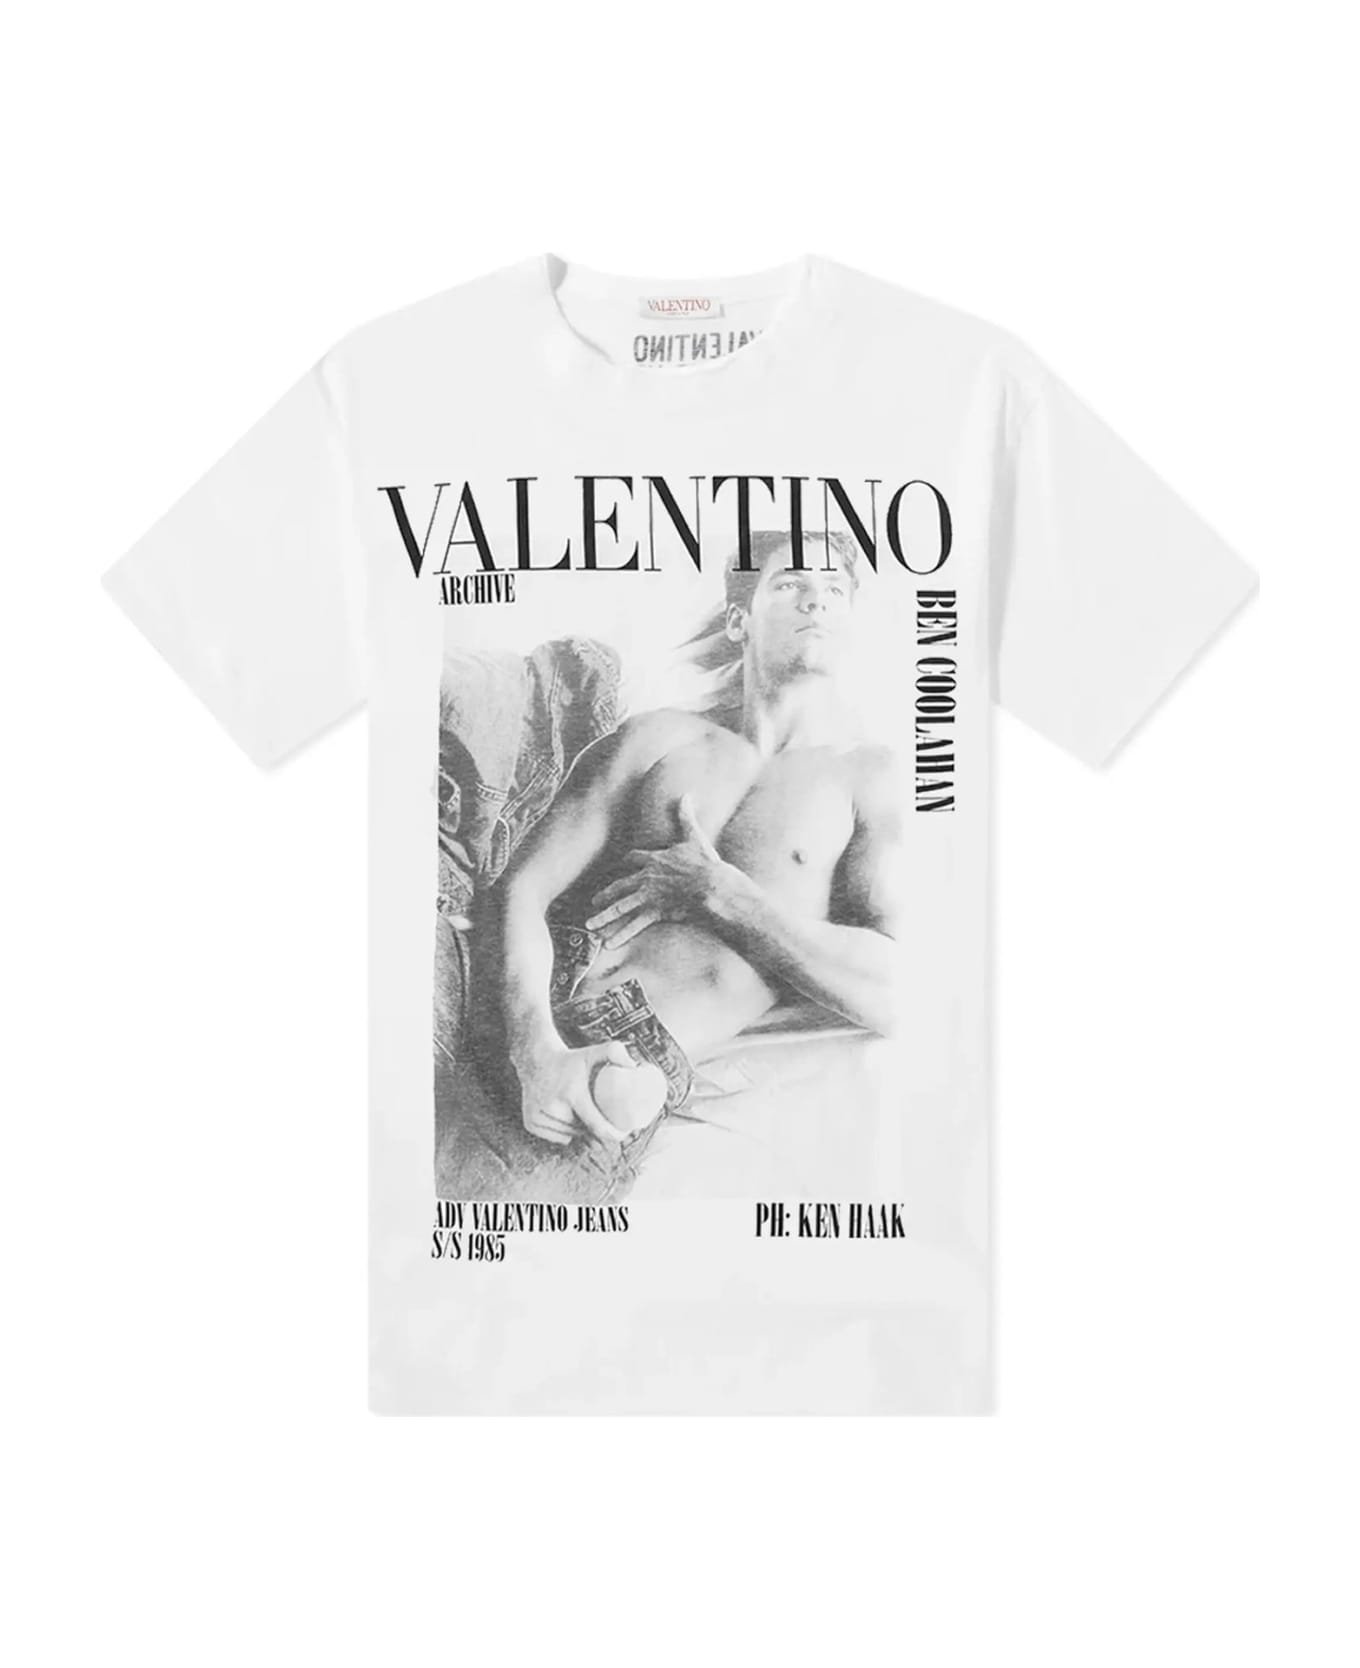 Valentino Archive Print T-shirt - White シャツ